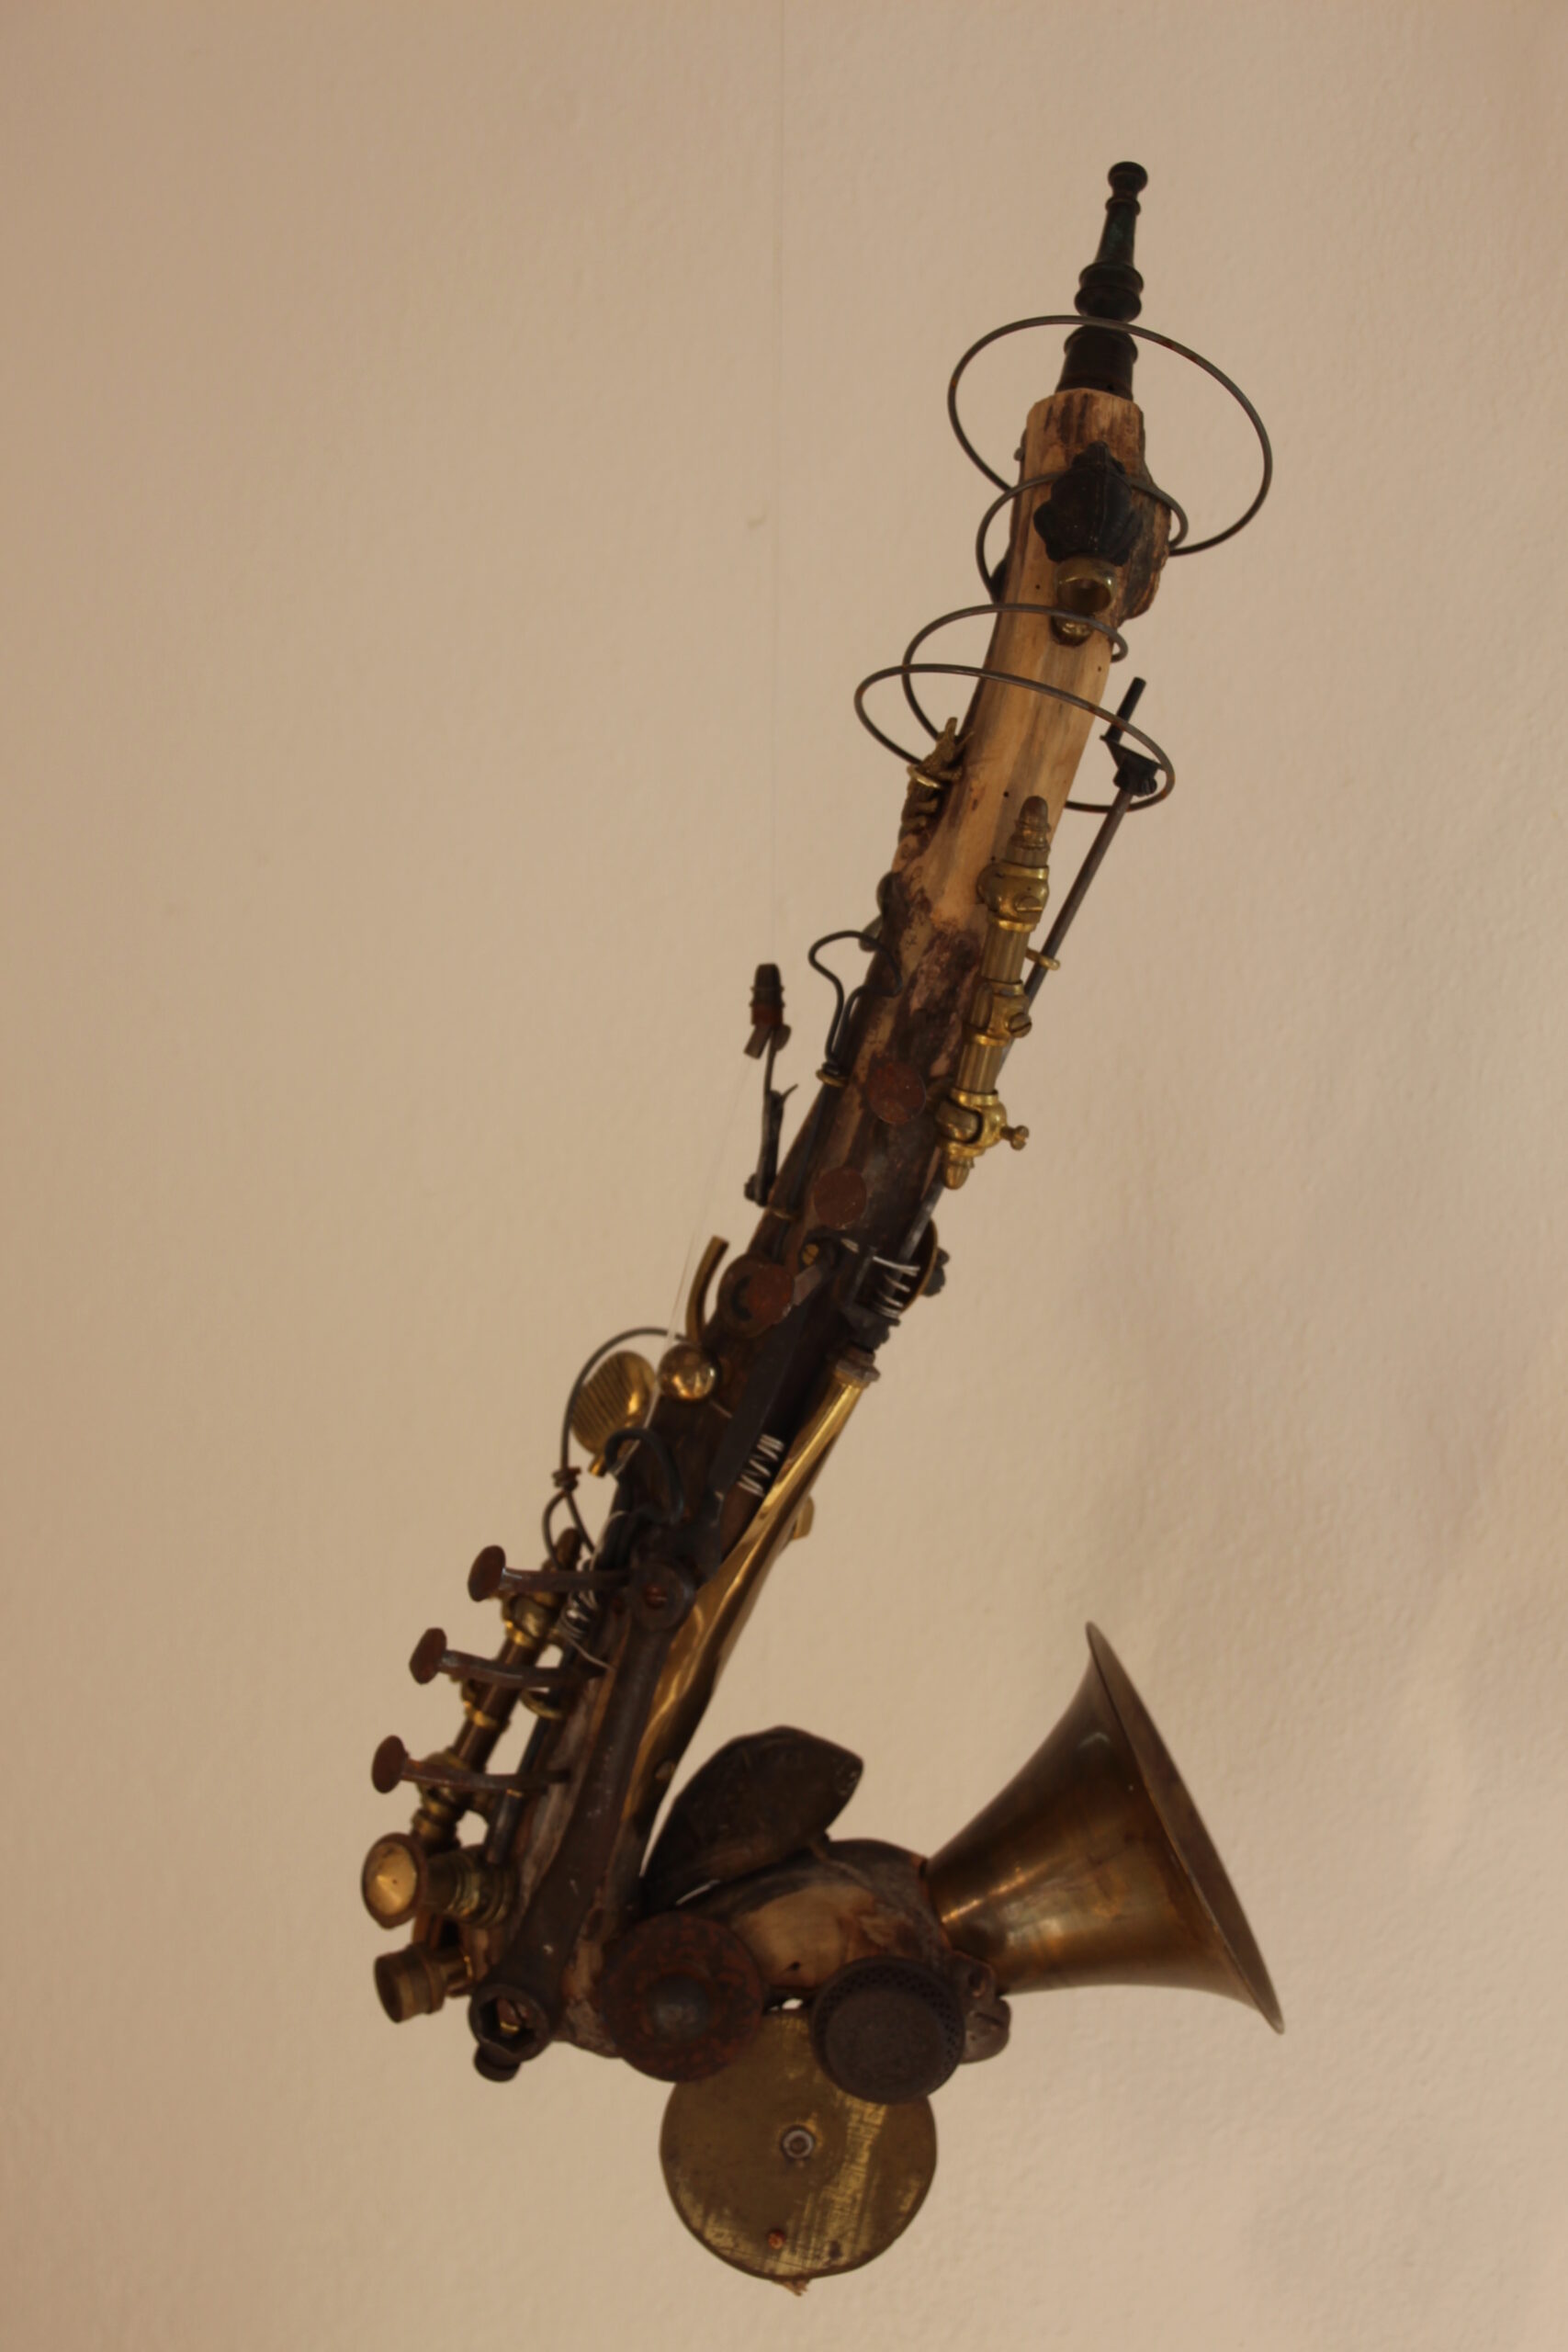 Rainer Leitz Artwork A.21 "Saxophon"